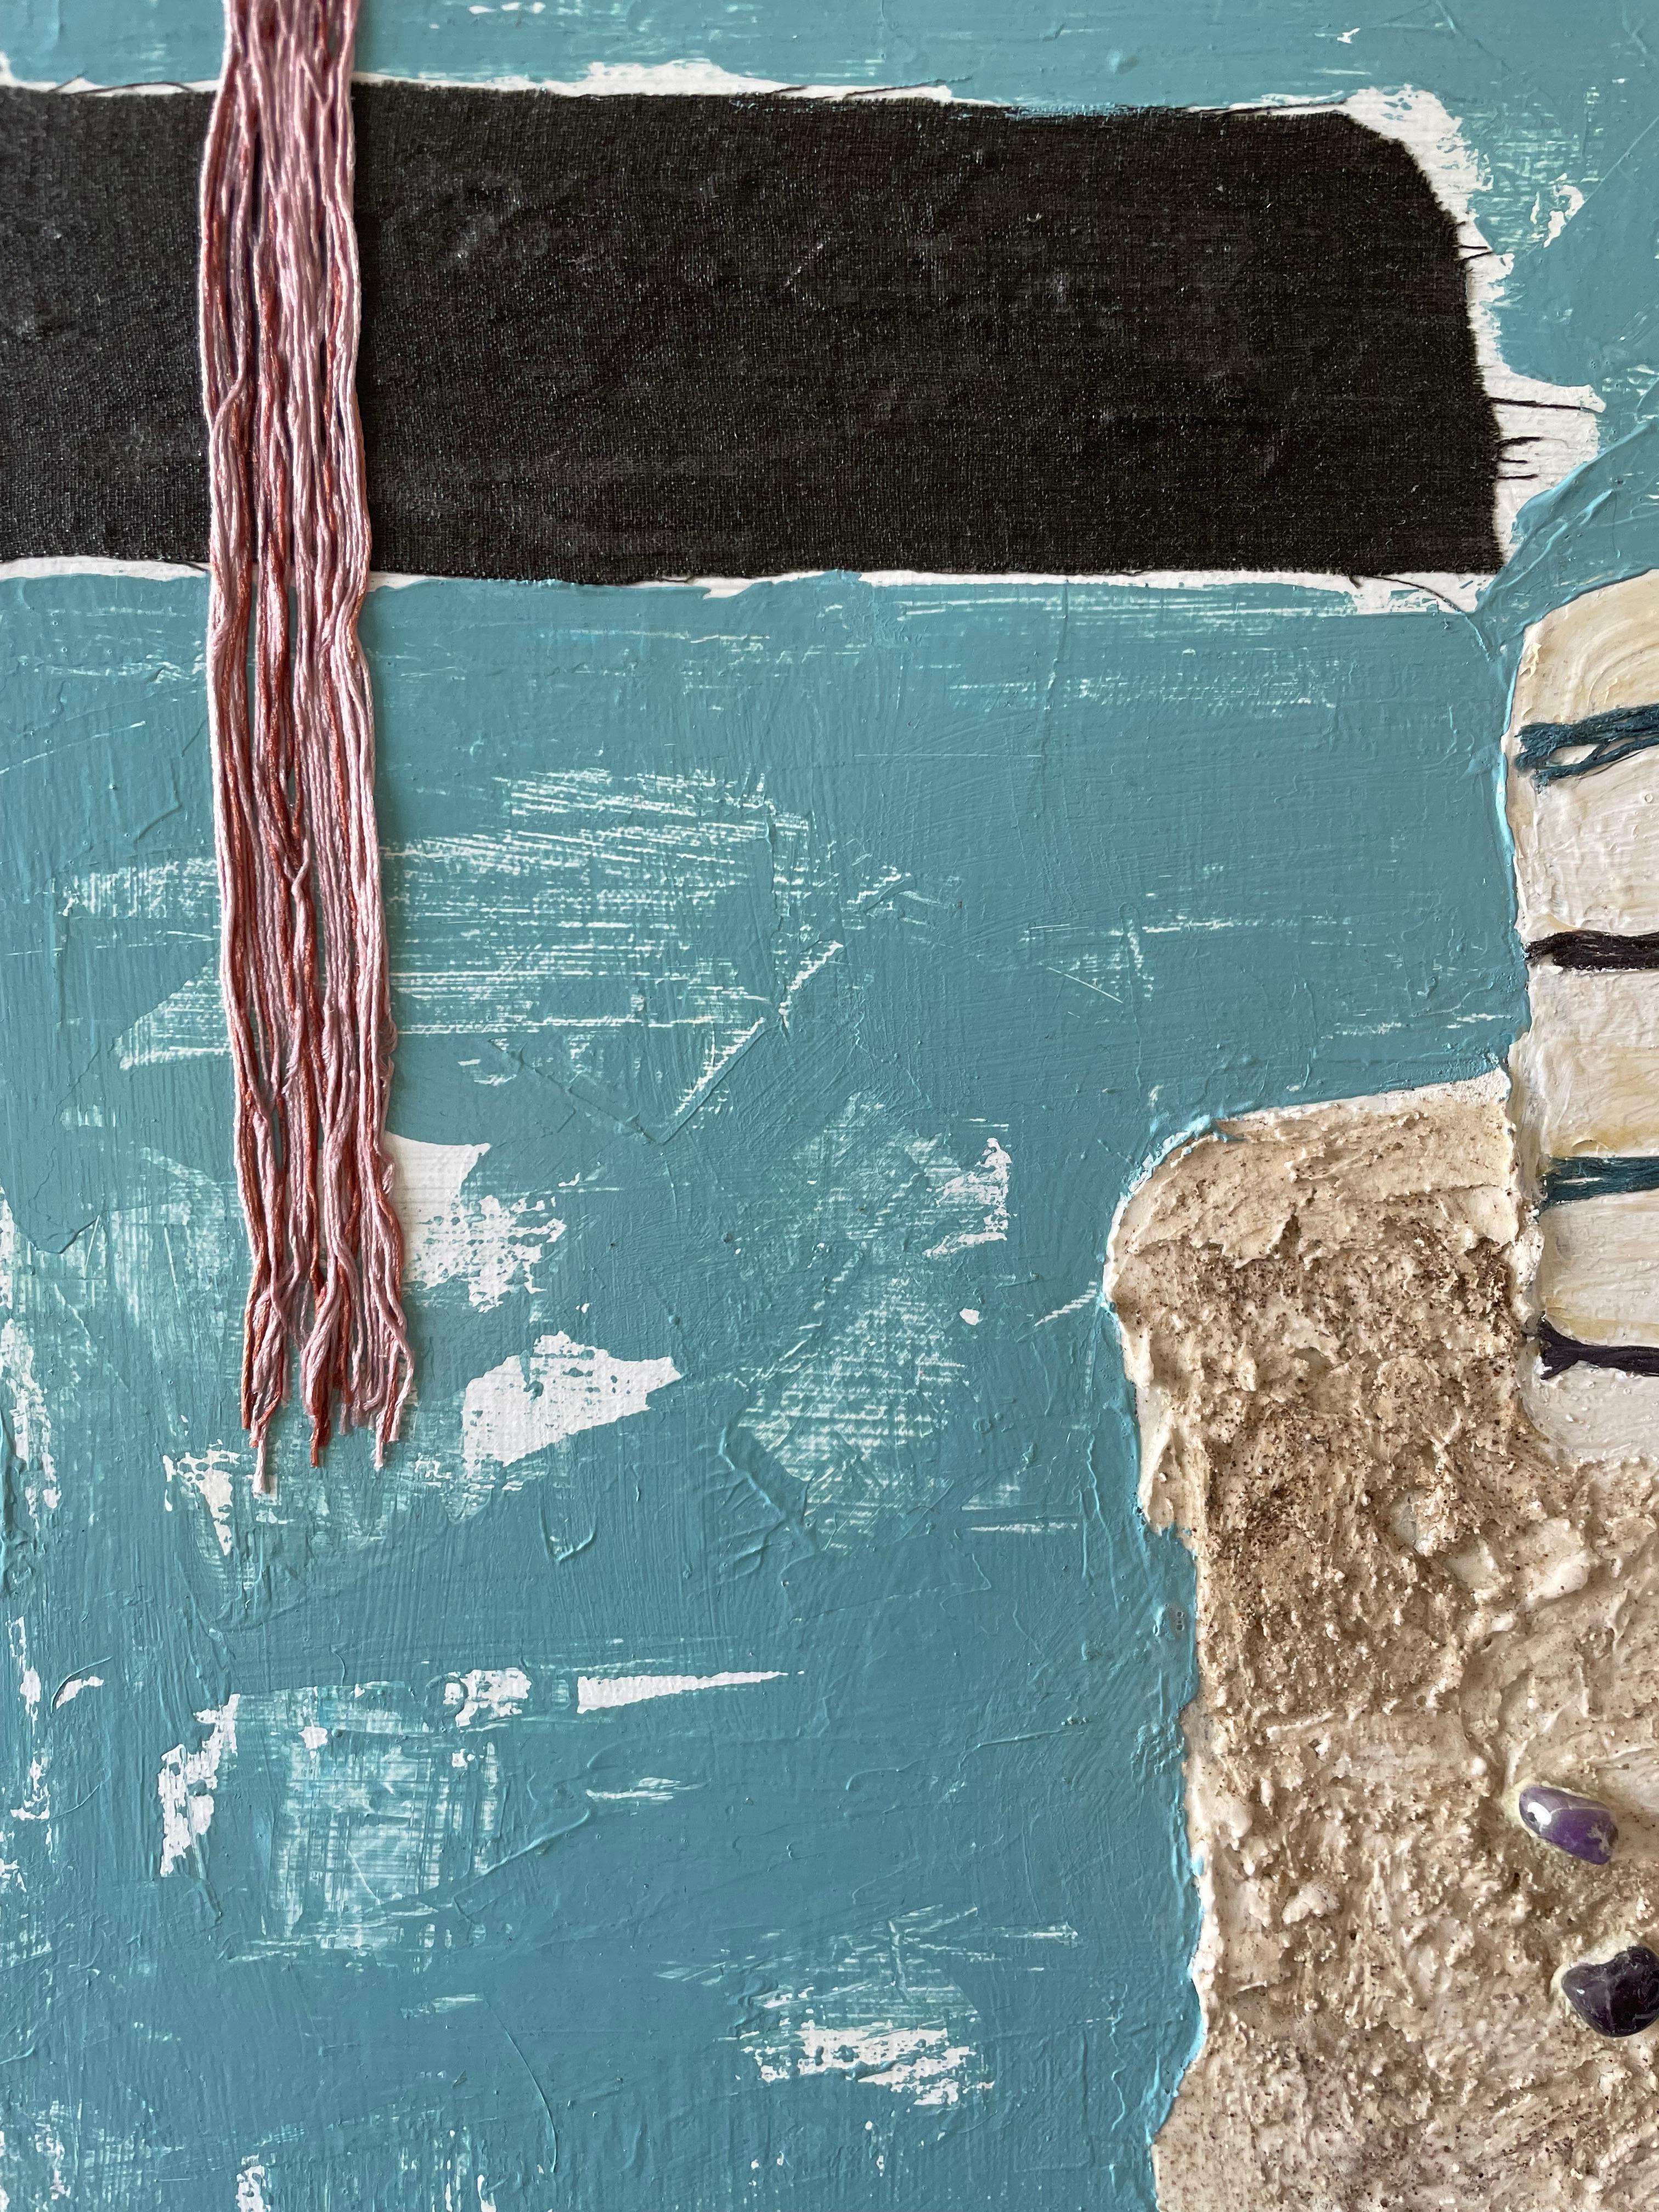 Quadratische Komposition im Genre des Konzeptualismus. Das Gemälde in Mischtechnik hat eine sanfte Farbgebung - Beige, Grau, Hellblau und Silber. Acrylfarbe, Strukturpaste mit Kaffee und Sand, synthetisches Textil, Amethyste, Acryllack auf 100%